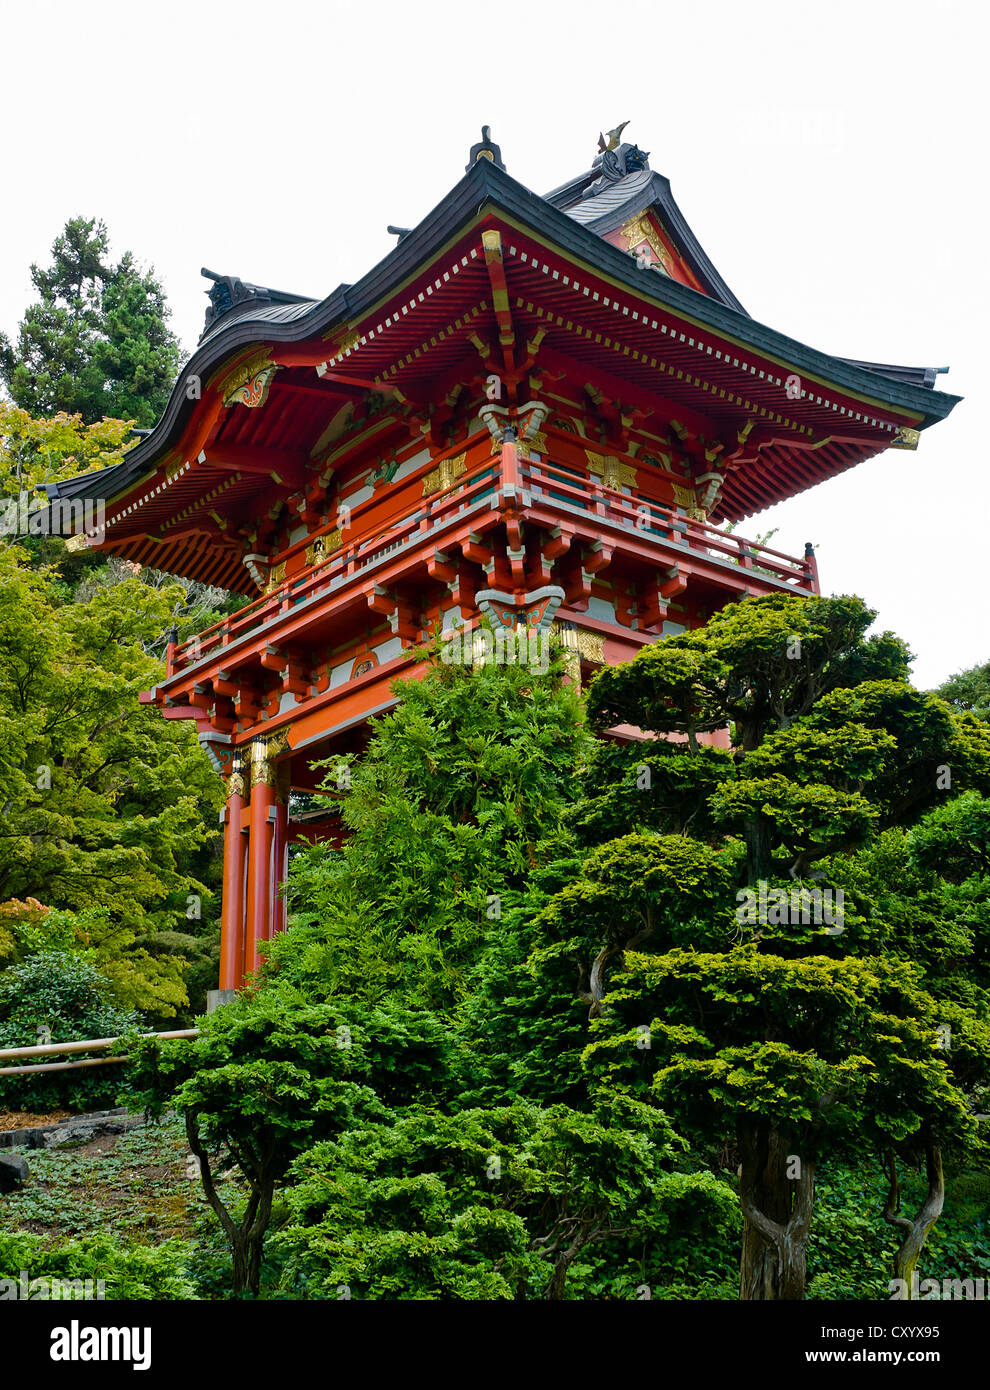 Tee japonais jardin dans le parc du Golden Gate San Francisco, Californie niveau multiples red roof pagoda tour bâtiment maison en t Banque D'Images